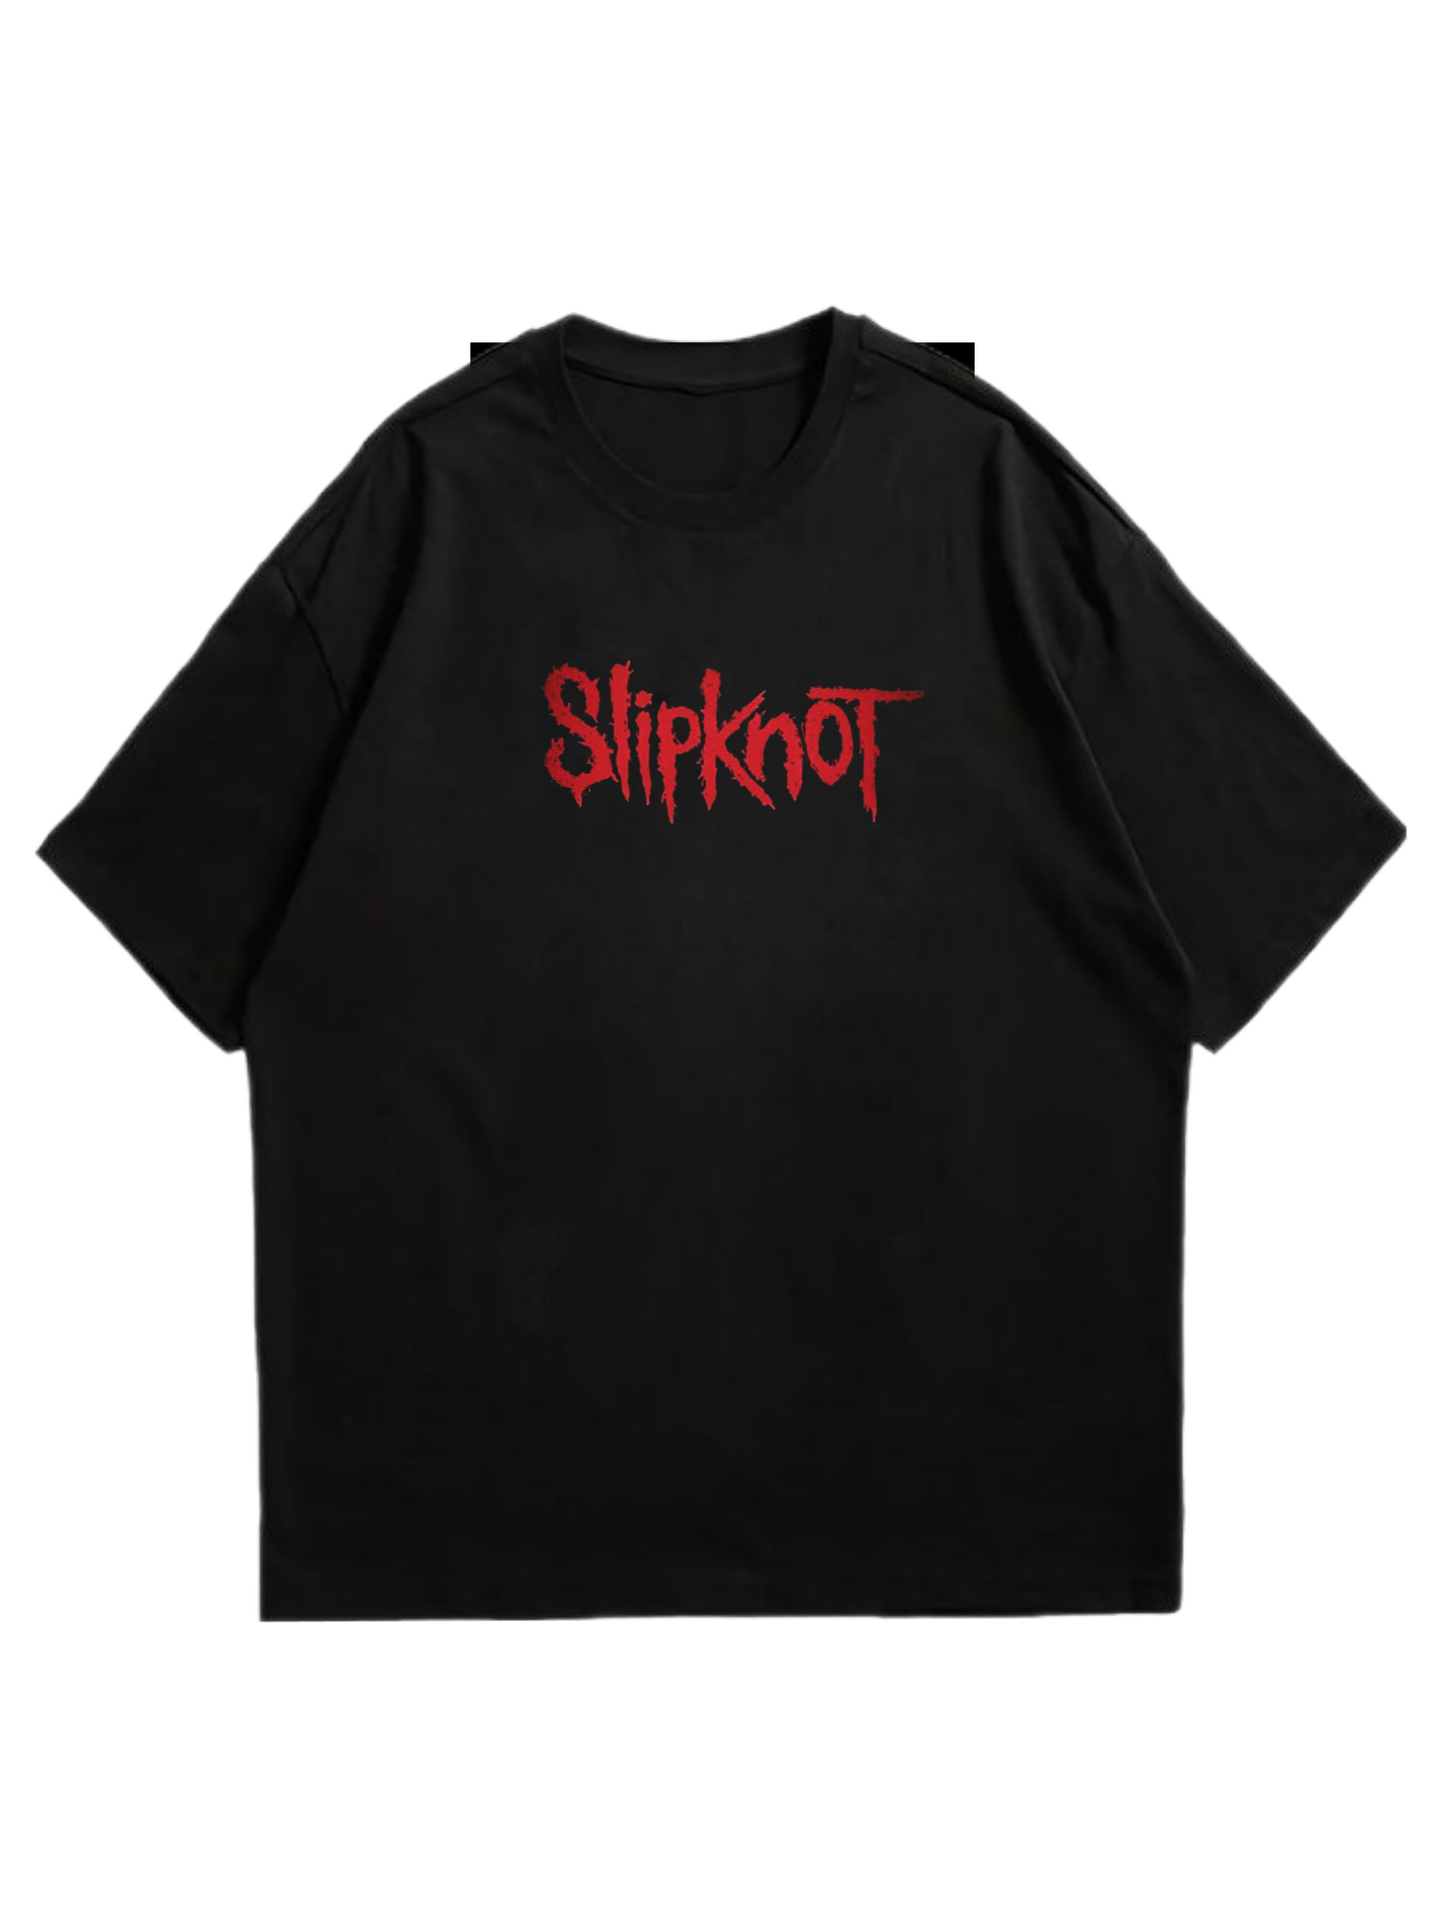 ‘Slipknot' tee